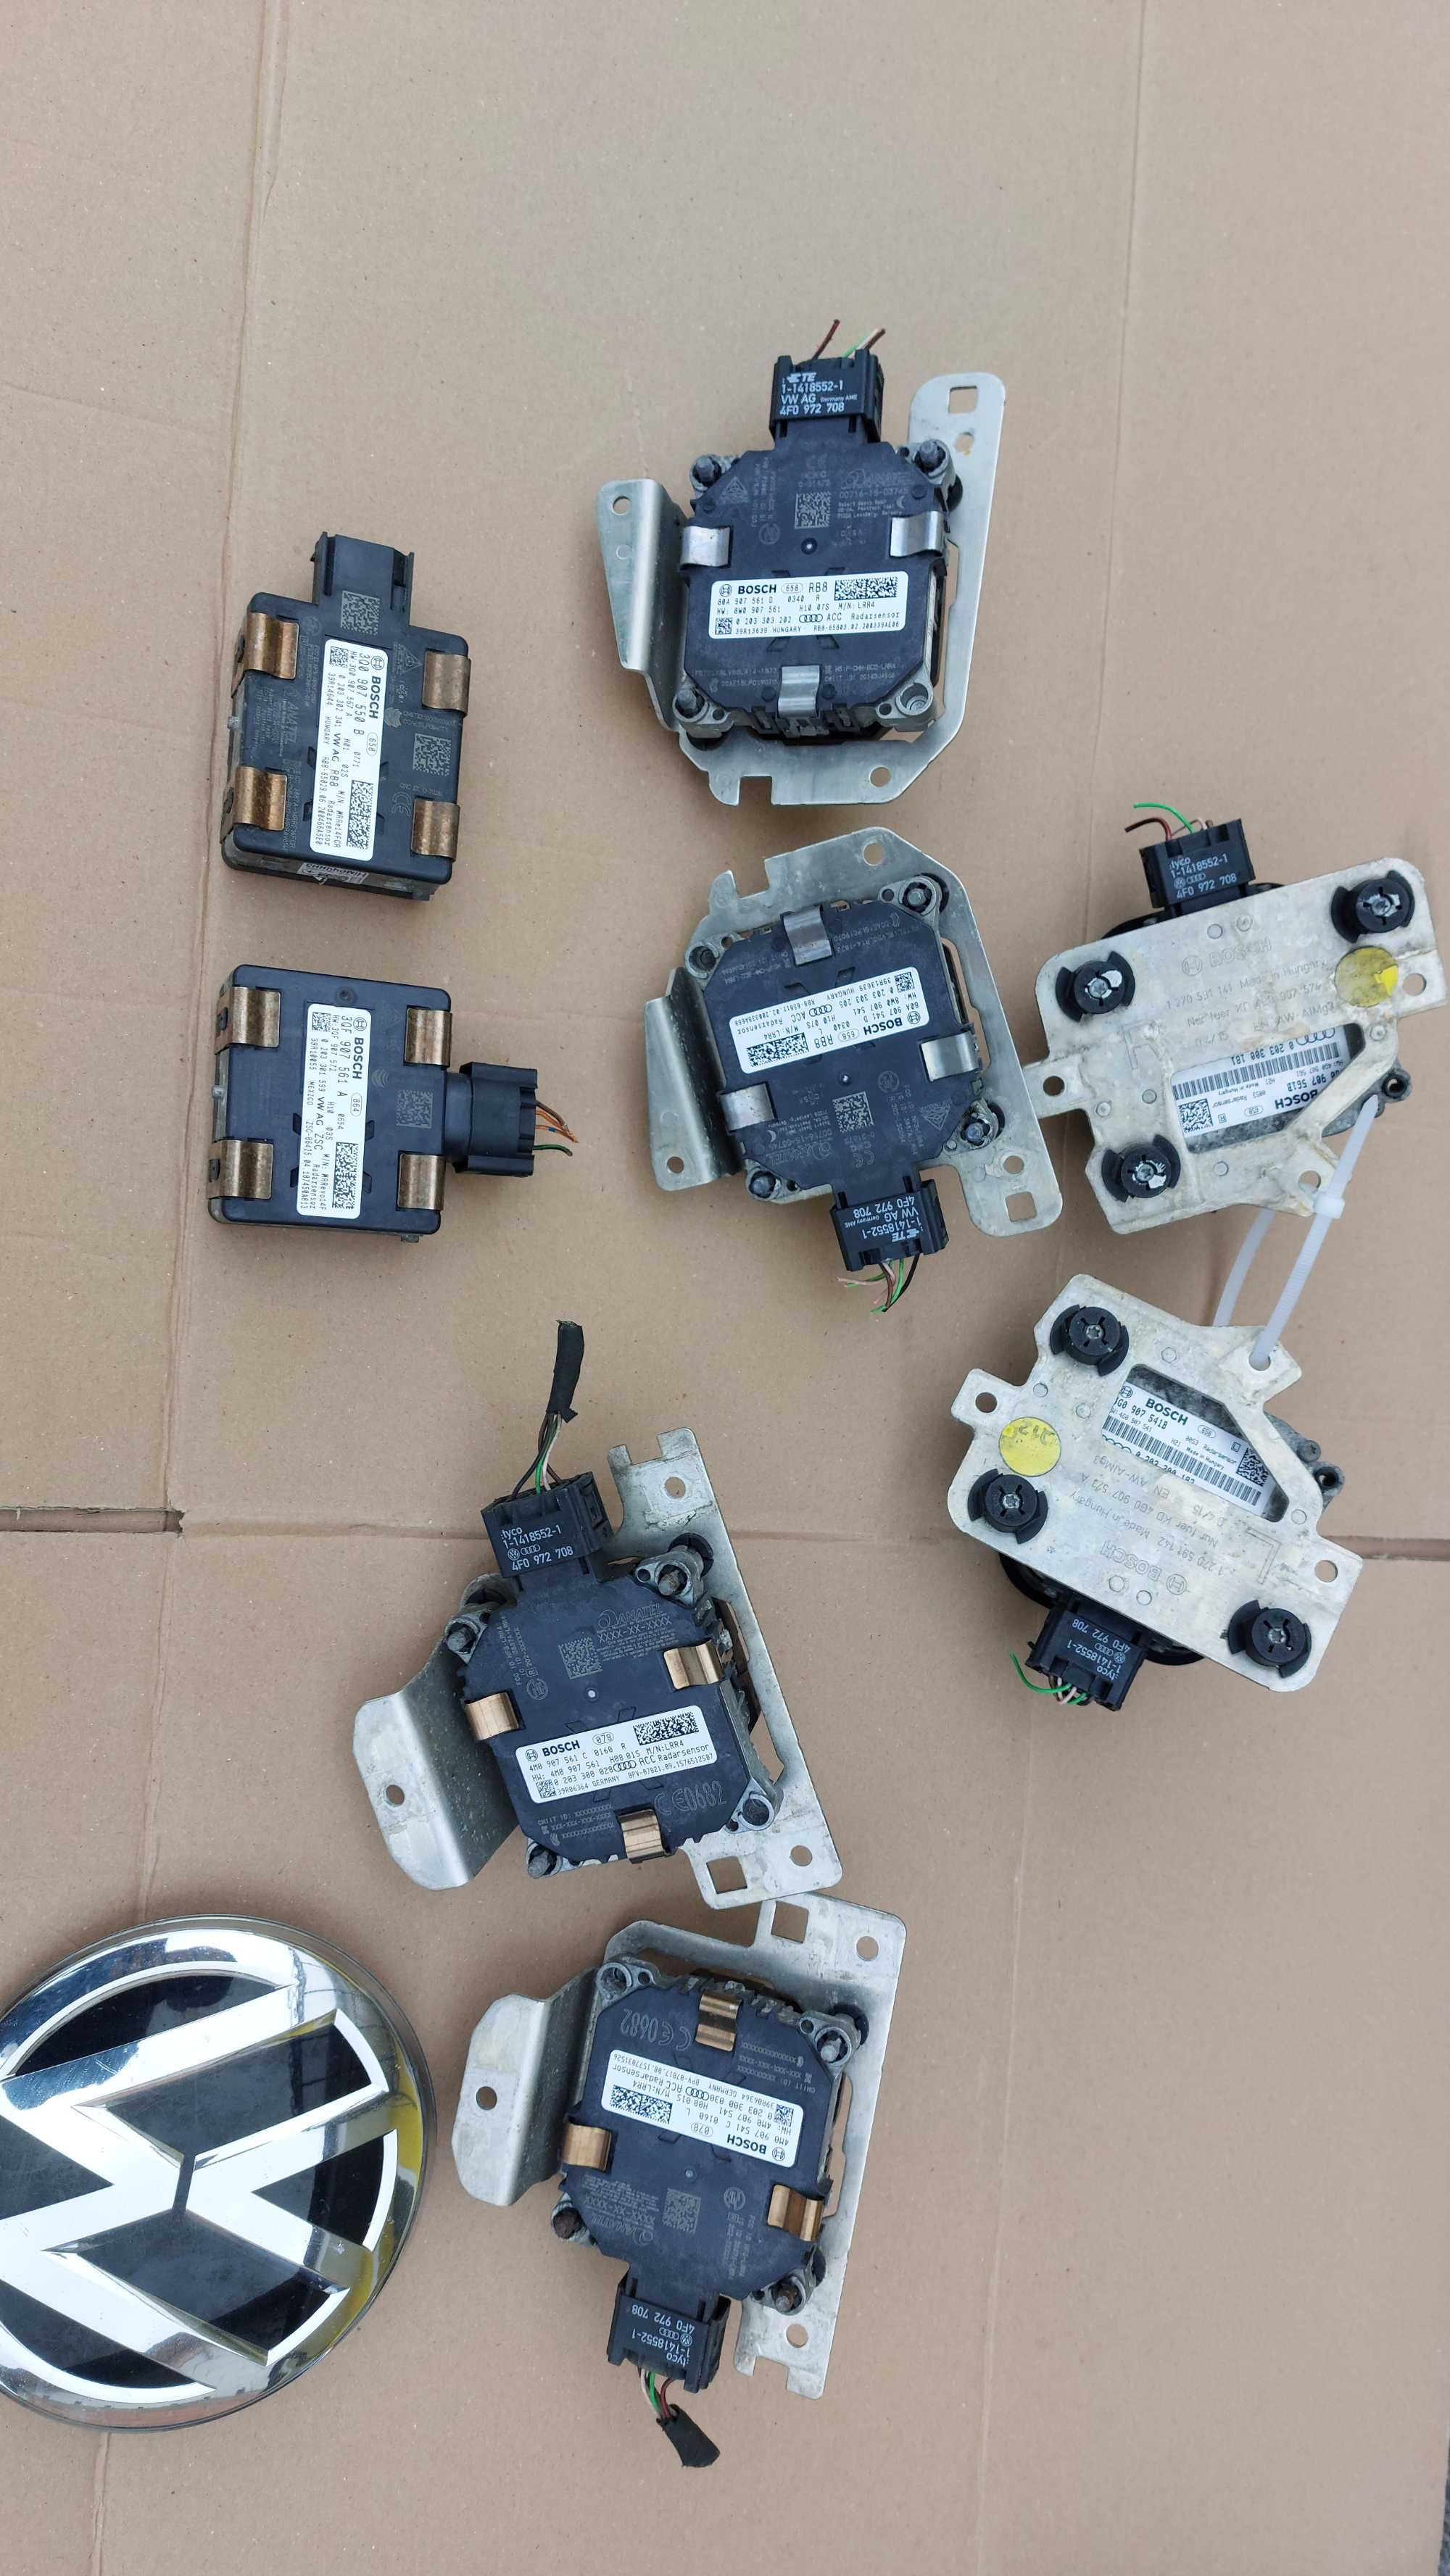 Senzor Distronic Radar Audi A6,A7,Q7,Q5 Passat Golf